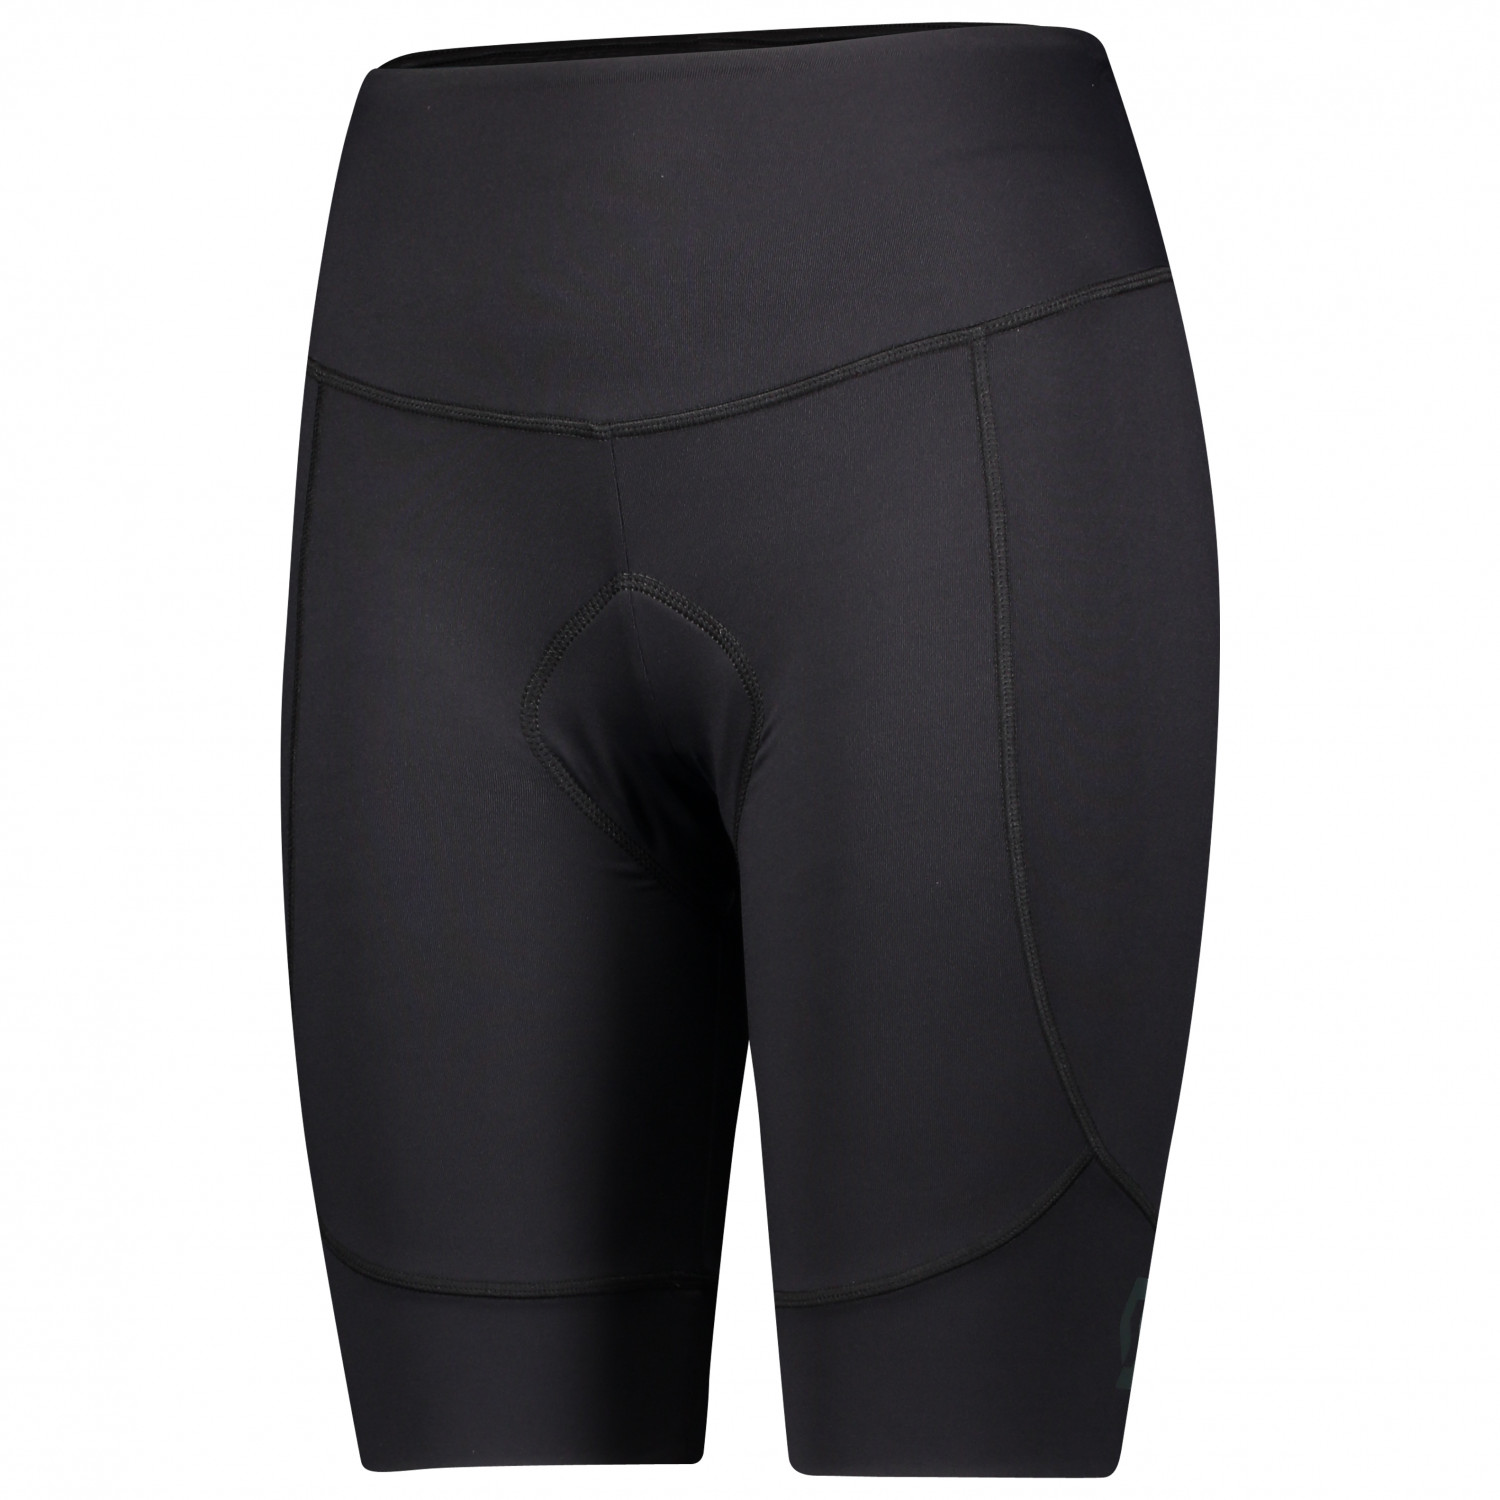 Велосипедные шорты Scott Women's Shorts Endurance 10 +++, цвет Black/Dark Grey